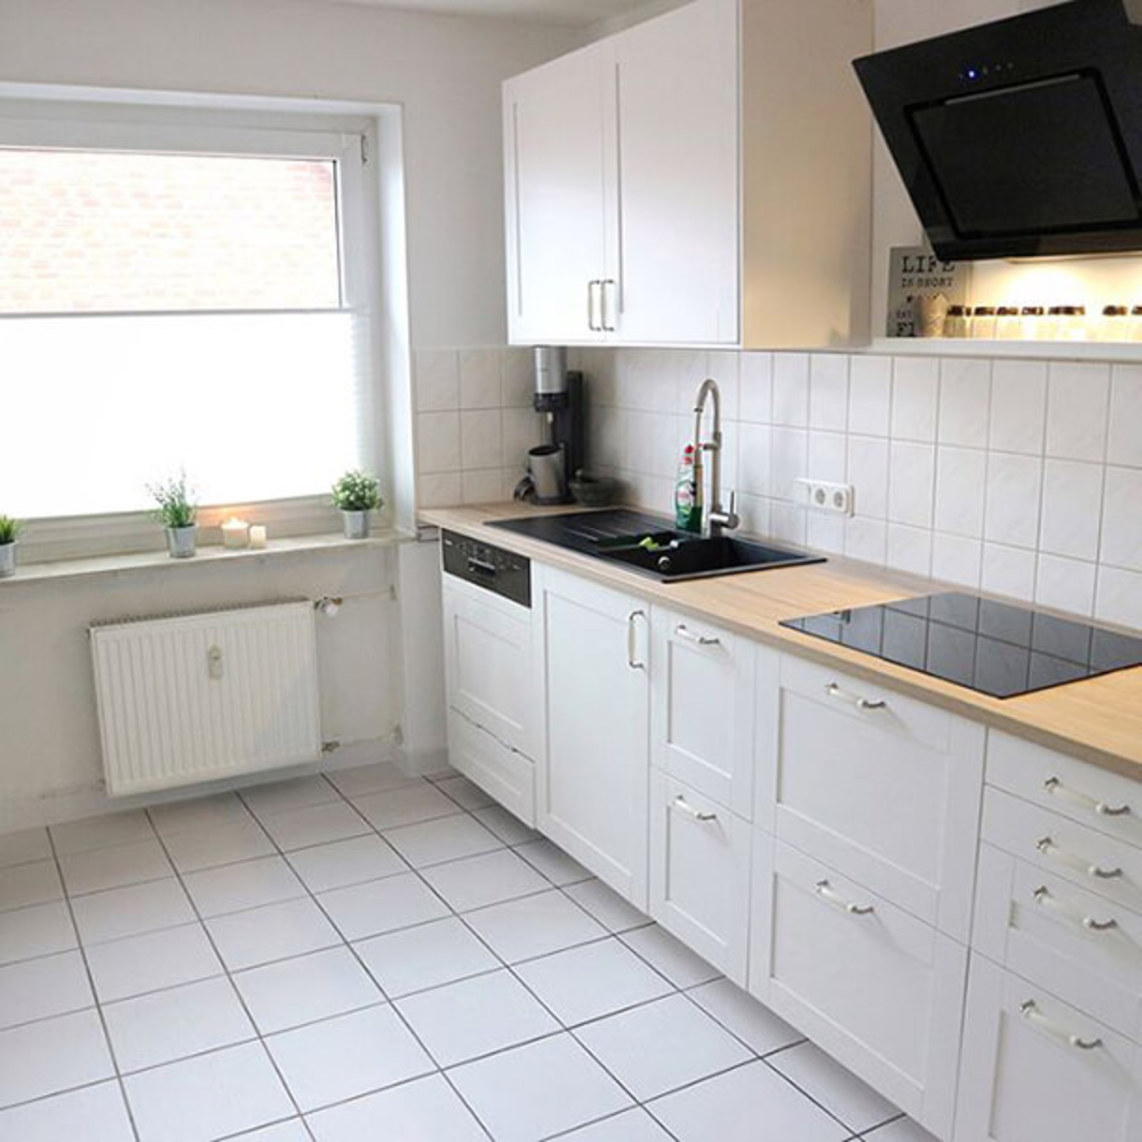 Raumgestaltung in der ganzen Küche für Fliesen, Arbeitsplatte, Fronten und glatte Flächen in Holz Weiß - nachher